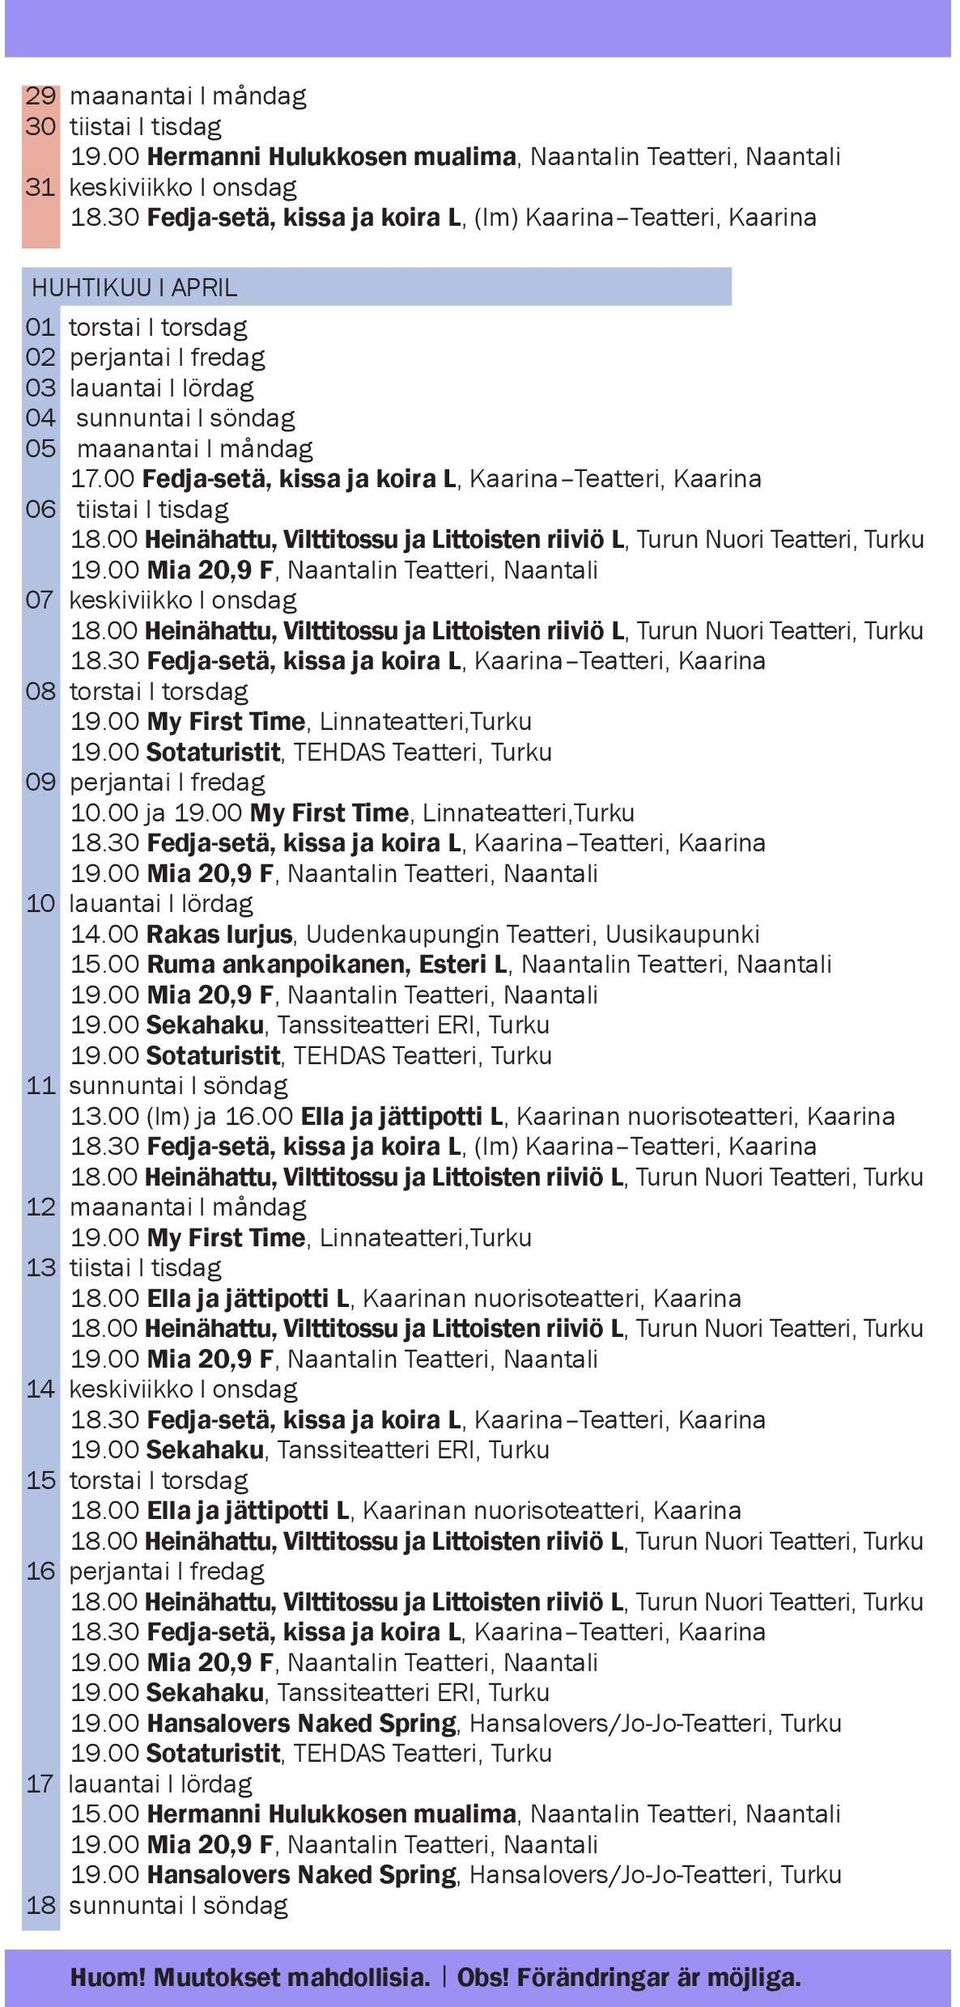 00 Fedja-setä, kissa ja koira L, Kaarina Teatteri, Kaarina 06 tiistai l tisdag 07 keskiviikko l onsdag 08 torstai l torsdag 19.00 My First Time, Linnateatteri,Turku 09 perjantai l fredag 10.00 ja 19.